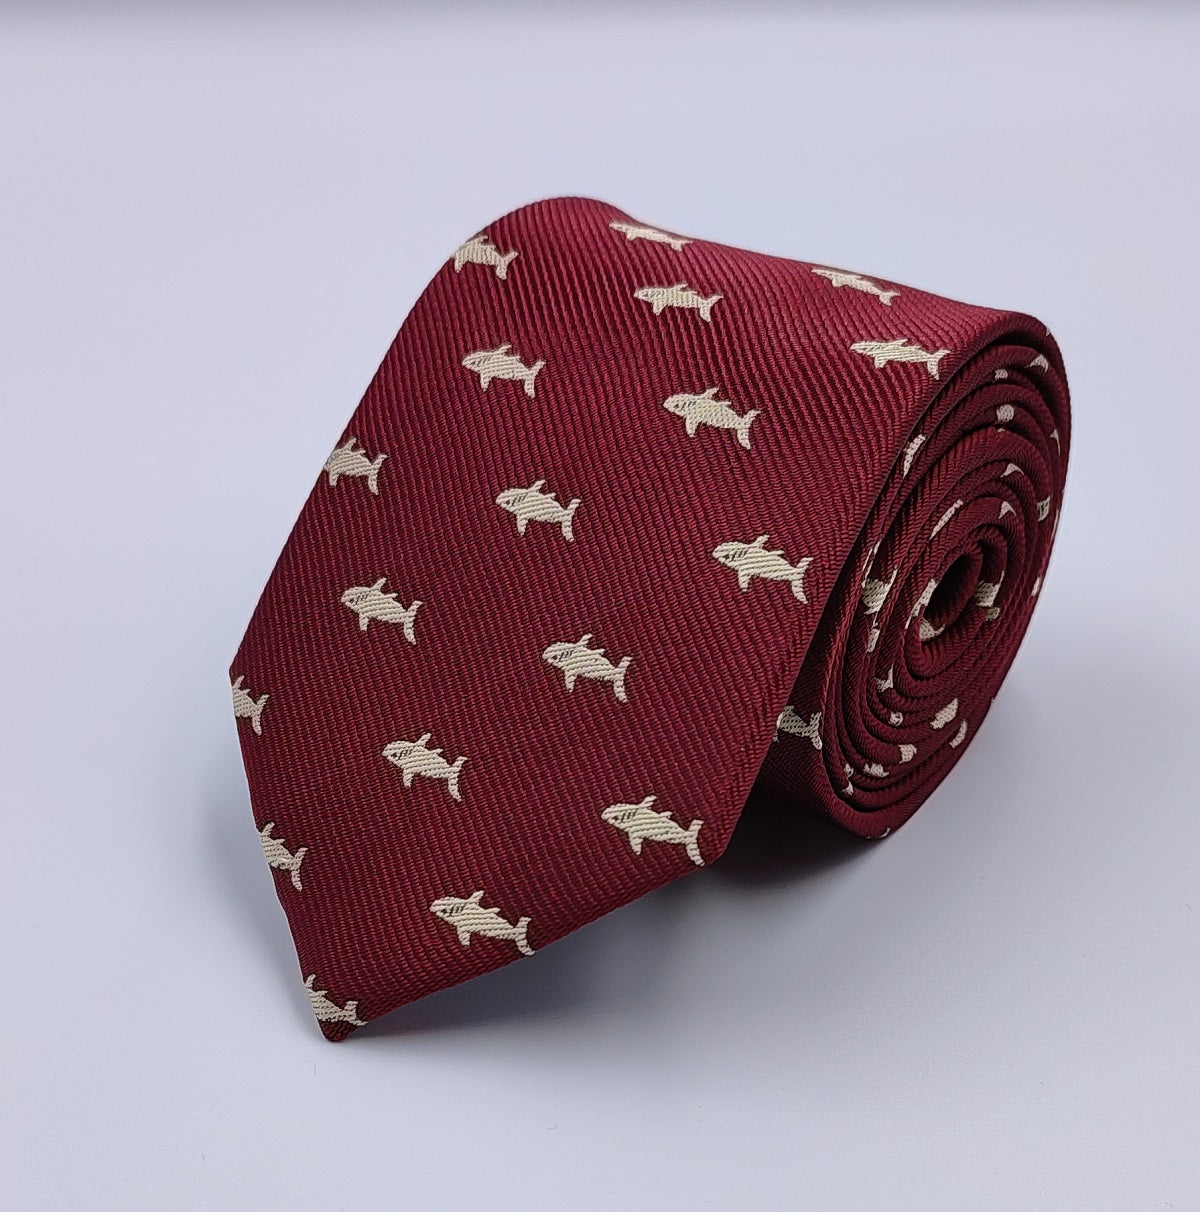 Necktie/Sharks Red